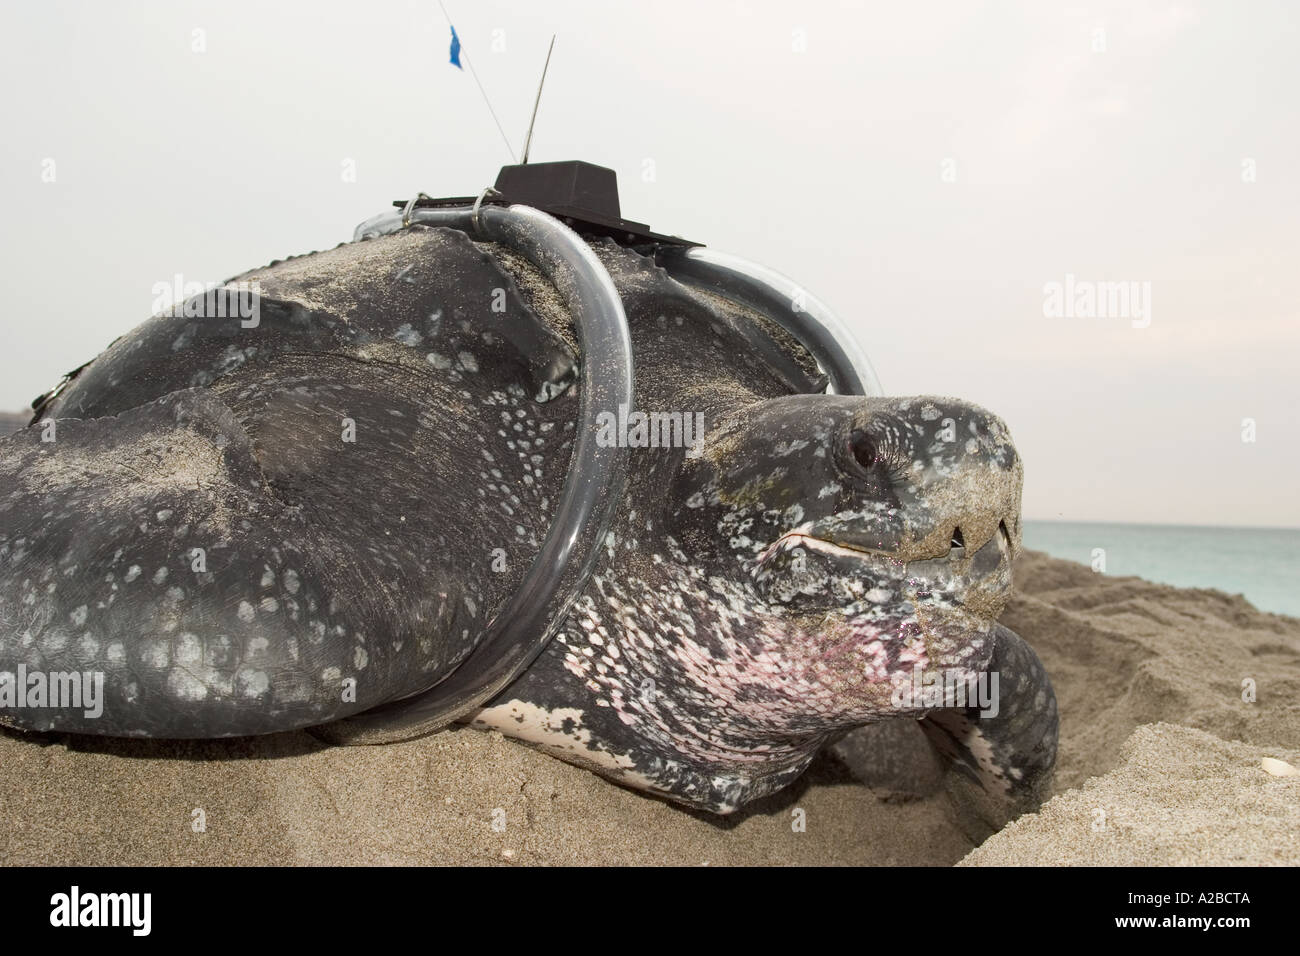 Leatherback sea turtle (Dermochelys coriacea) with satellite transmitter at dawn Stock Photo